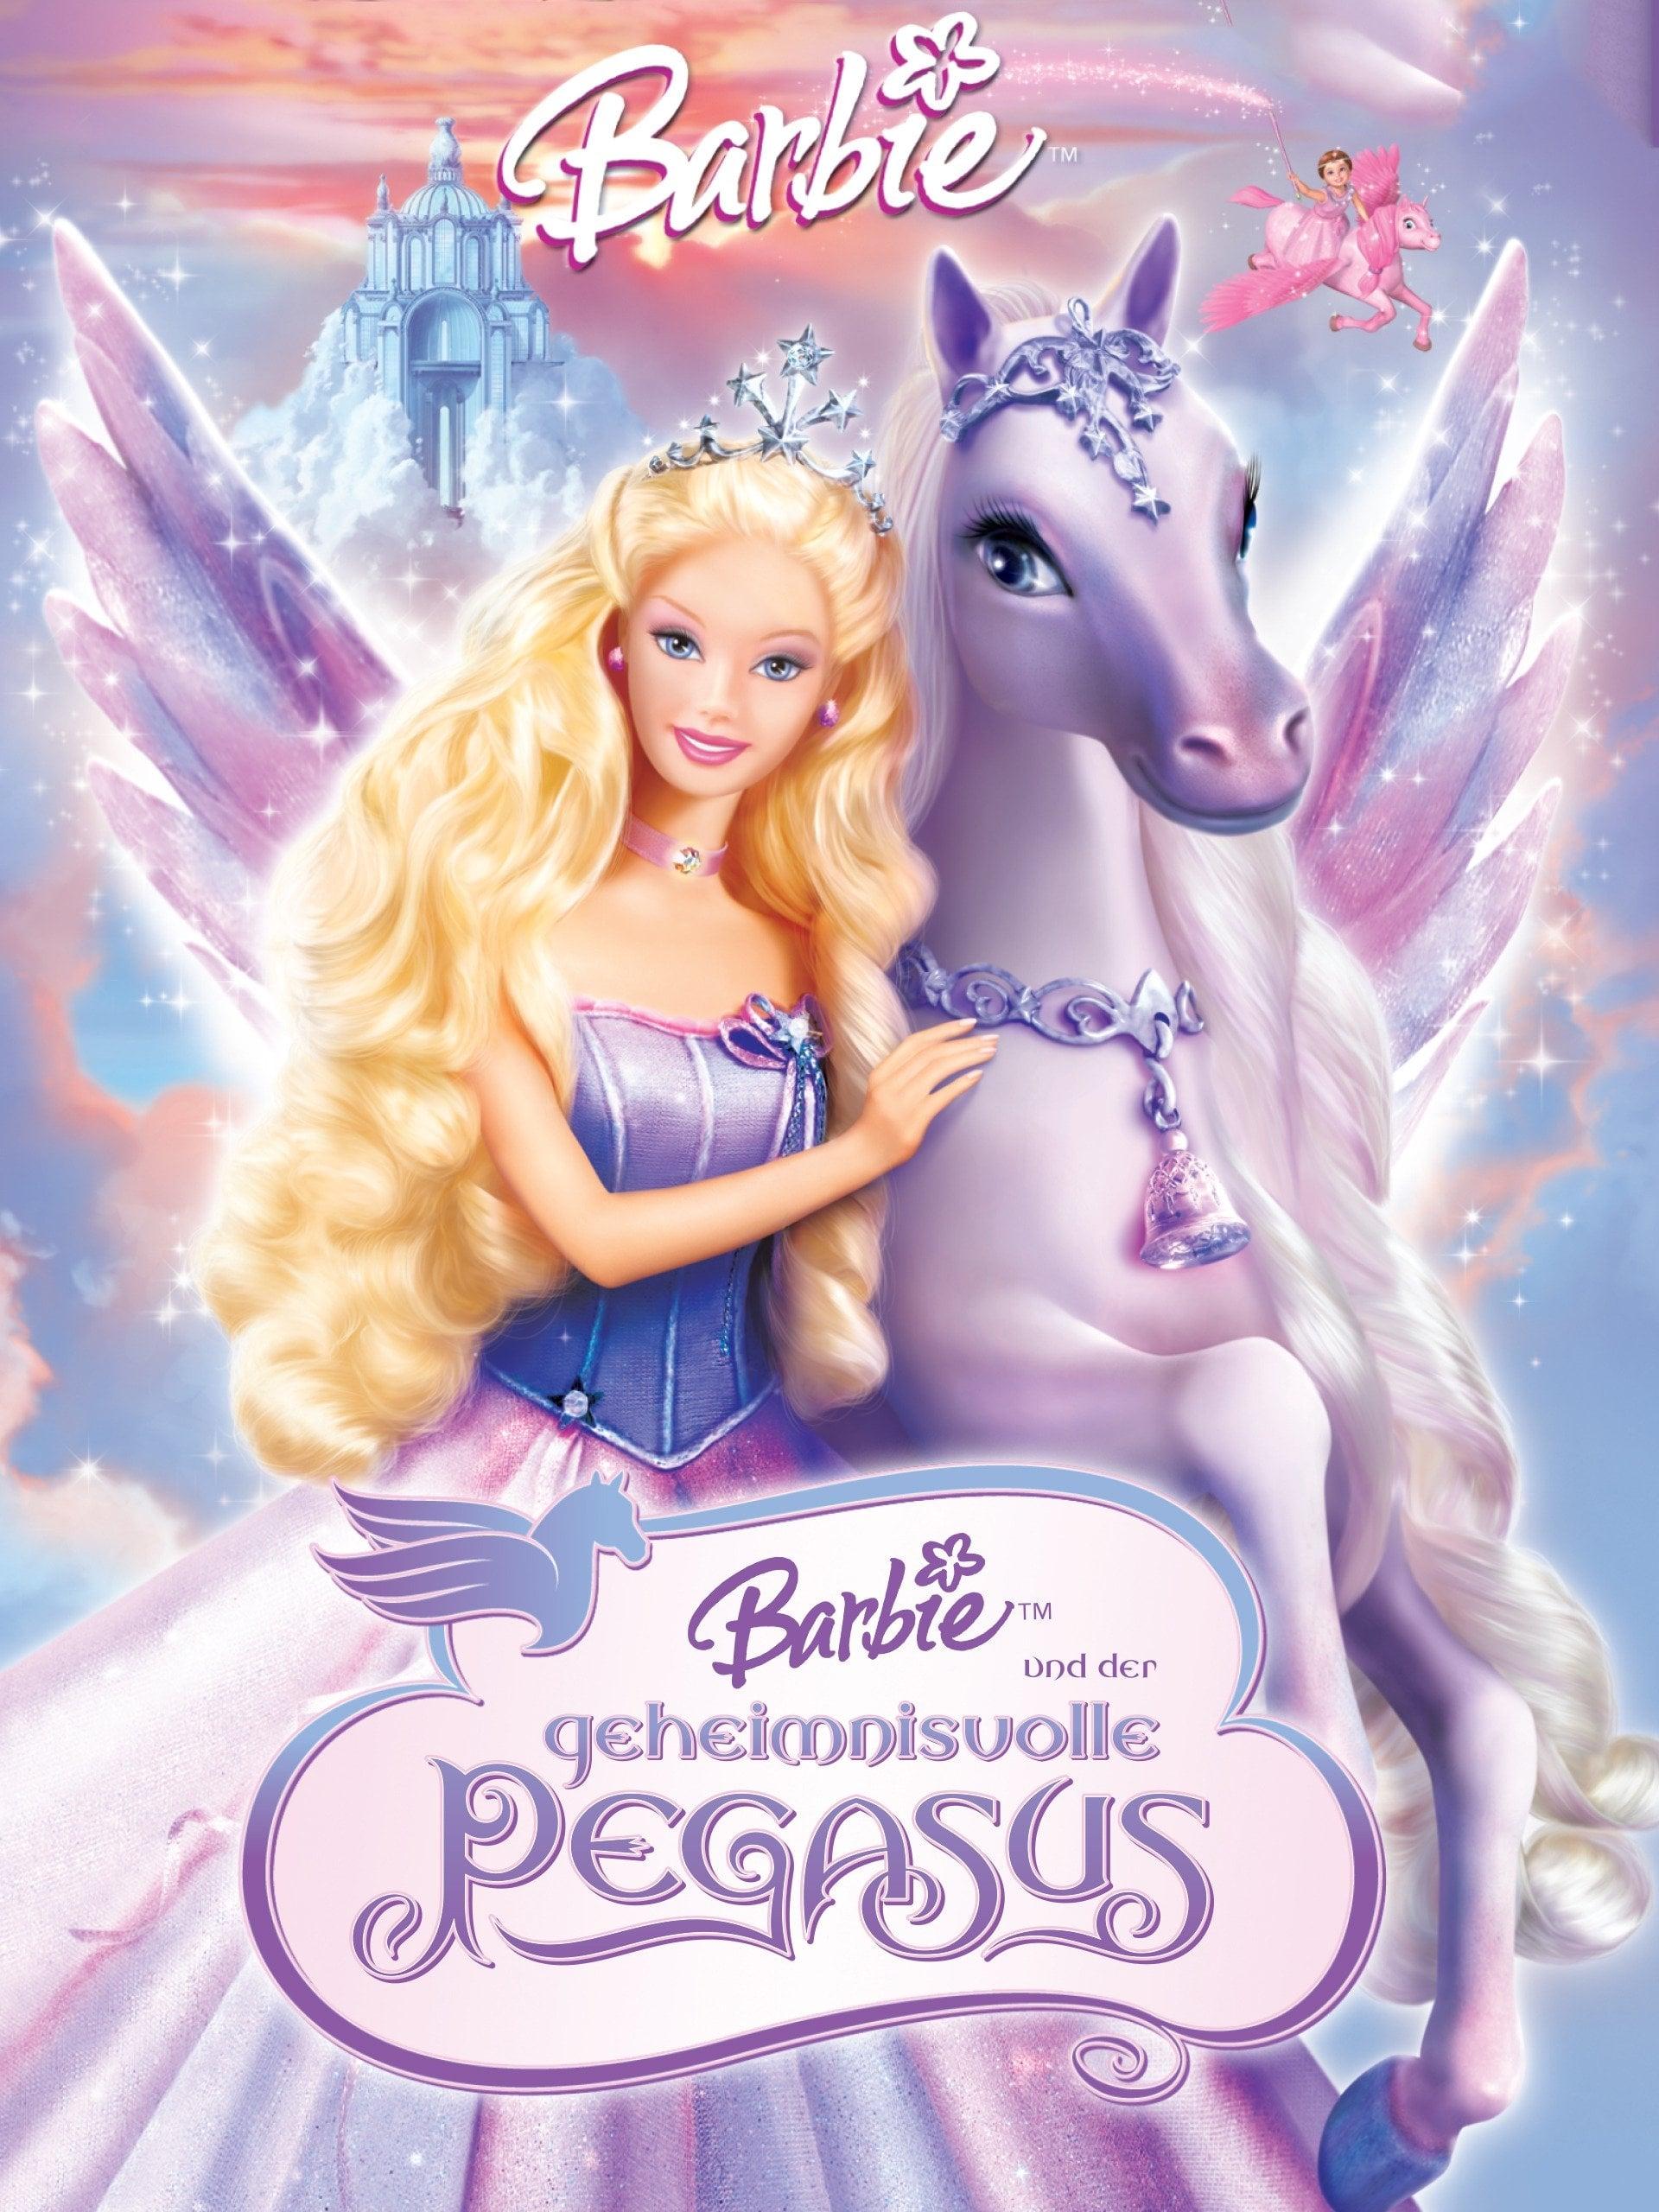 Barbie und der geheimnisvolle Pegasus poster